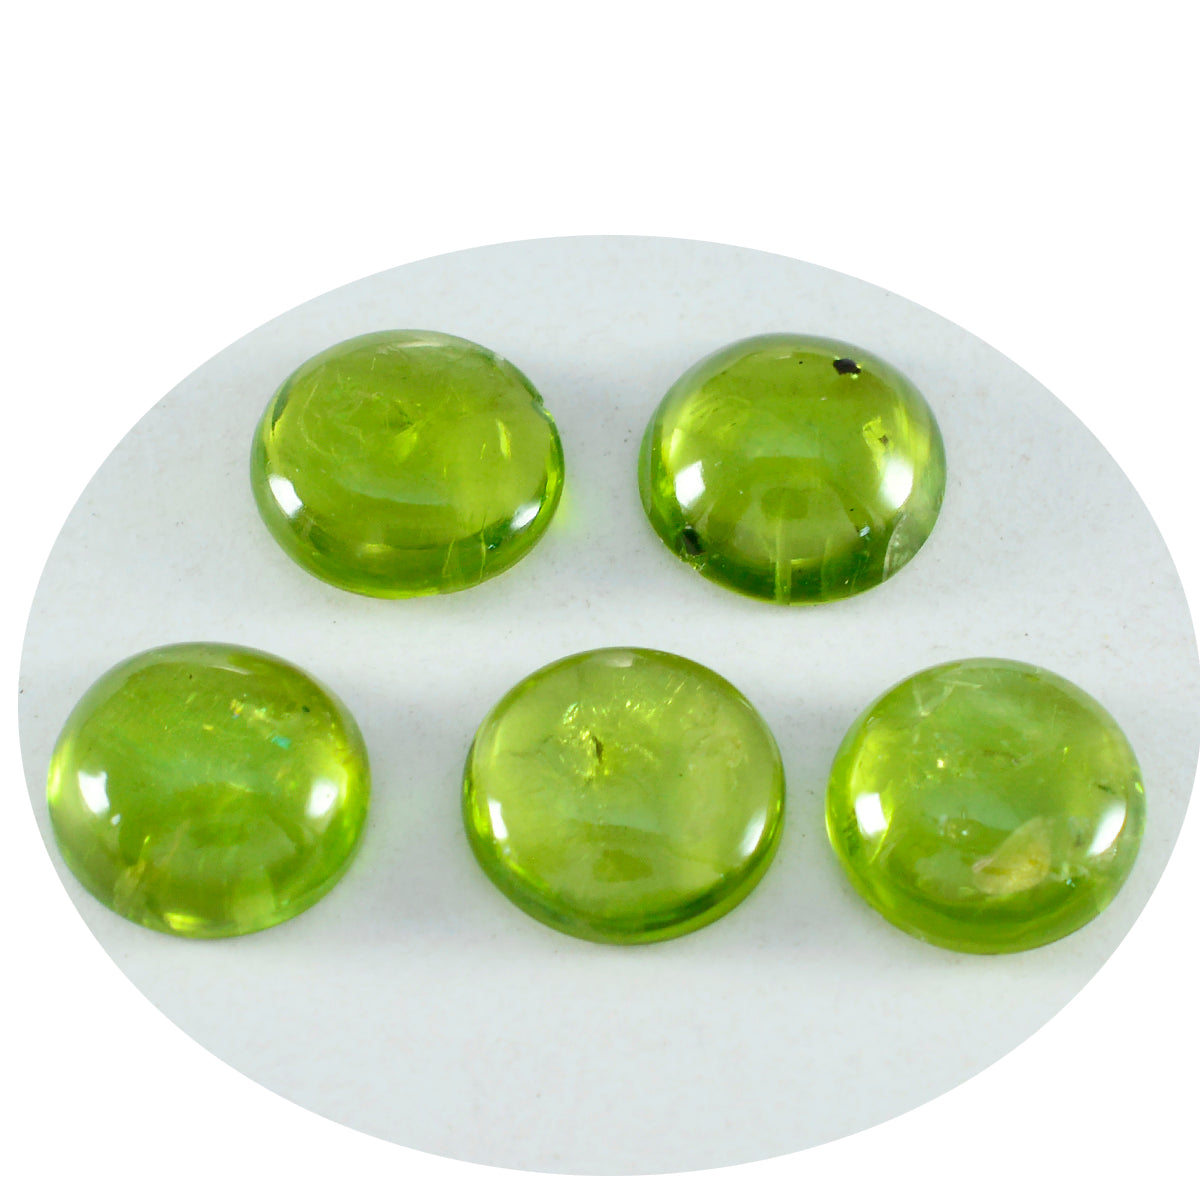 Riyogems 1 pc cabochon péridot vert 8x8 mm forme ronde bonne qualité pierre précieuse en vrac